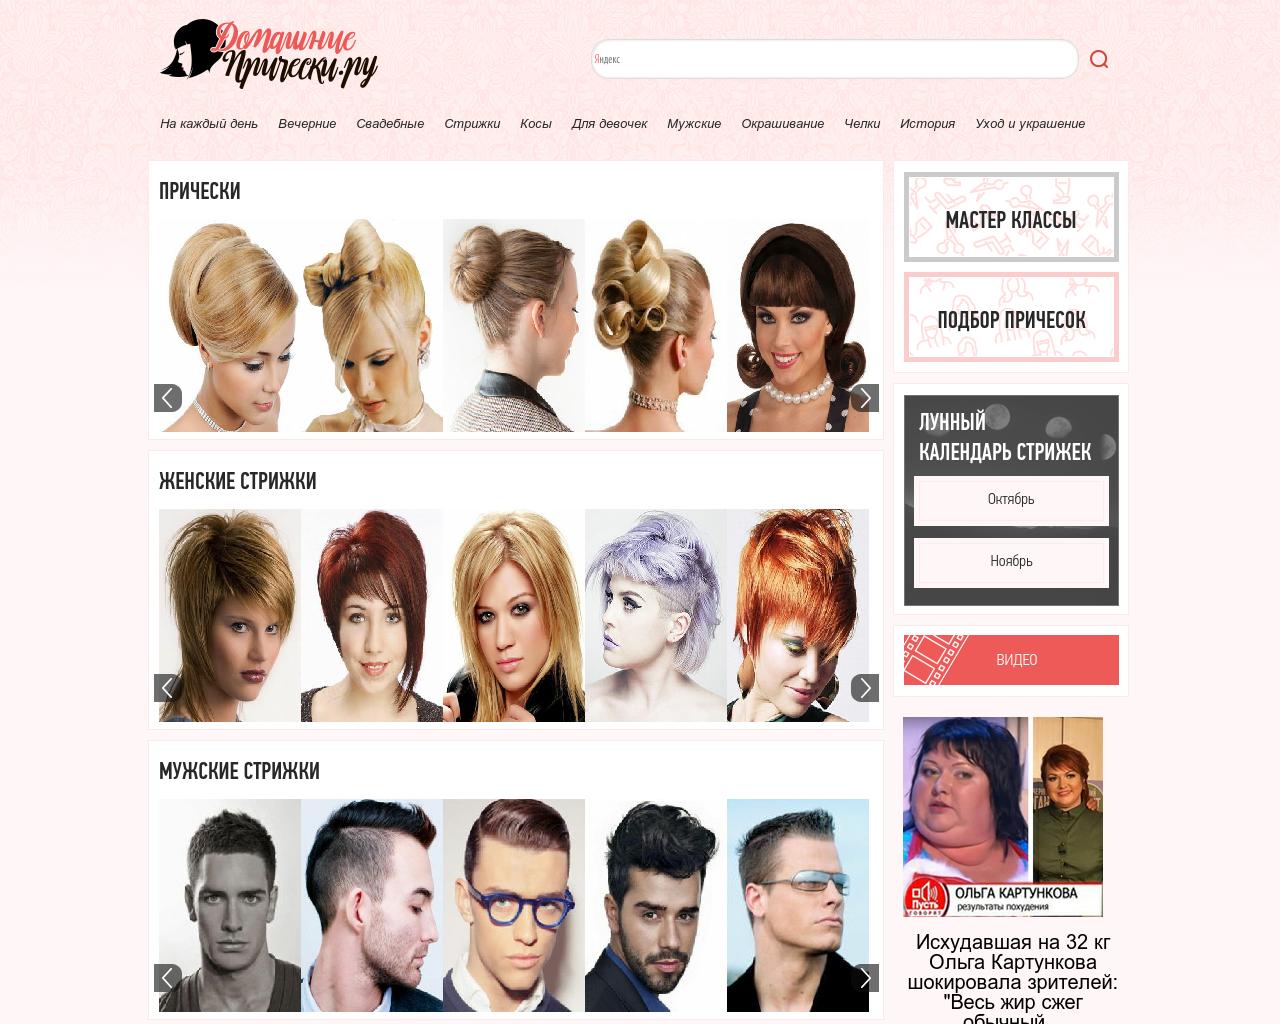 Подобрать цвет волос по фото онлайн 2022: список программ, сравнение